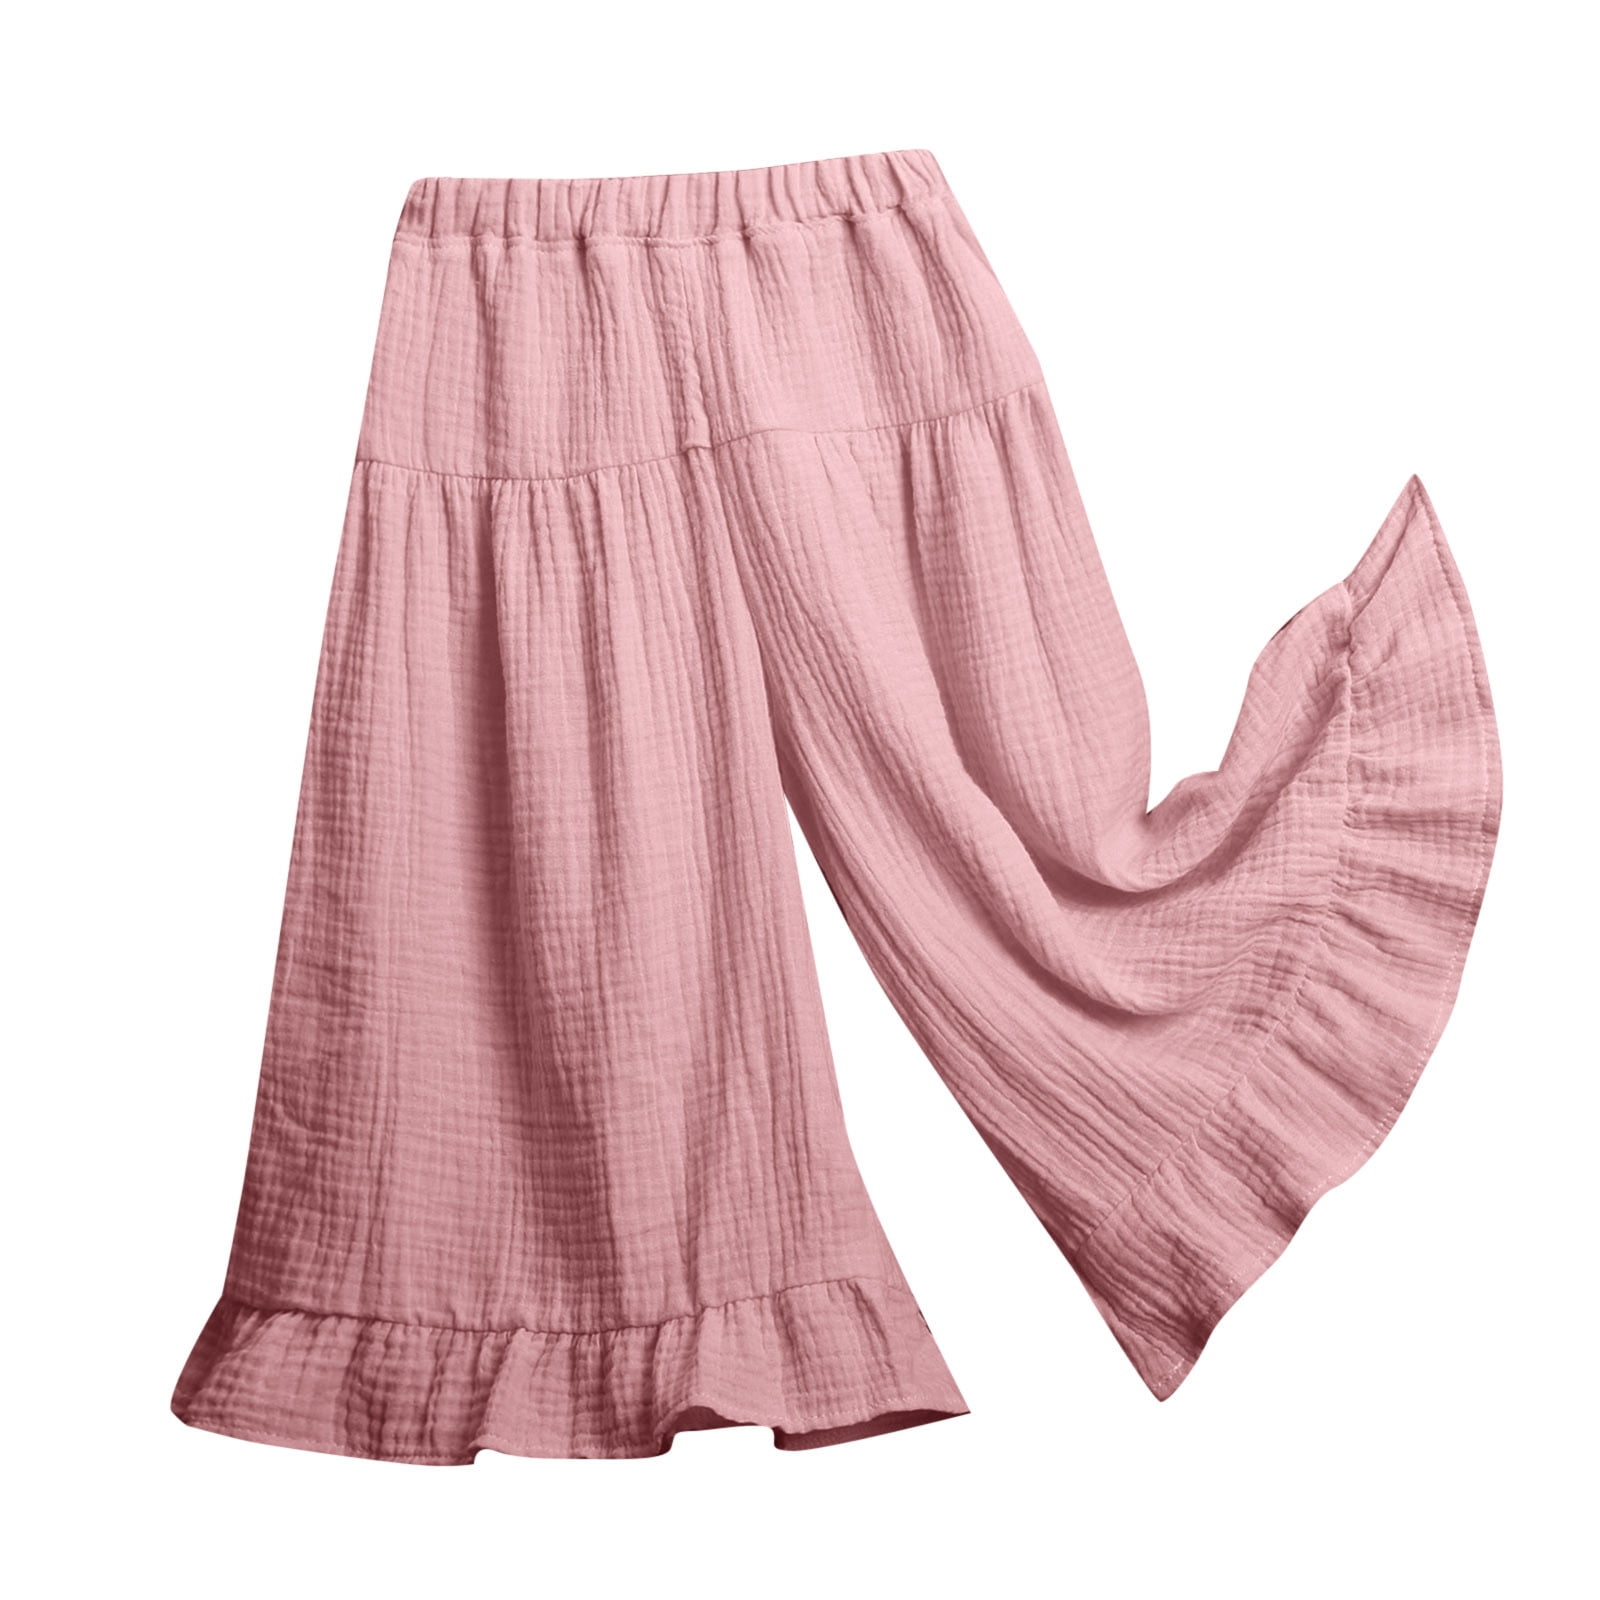 KaLI_store Girls Cargo Pants Girl's Leggings Cross High Waisted Flare Pants  Solid Color Full Length Bell Bottoms Khaki,6-12 Months